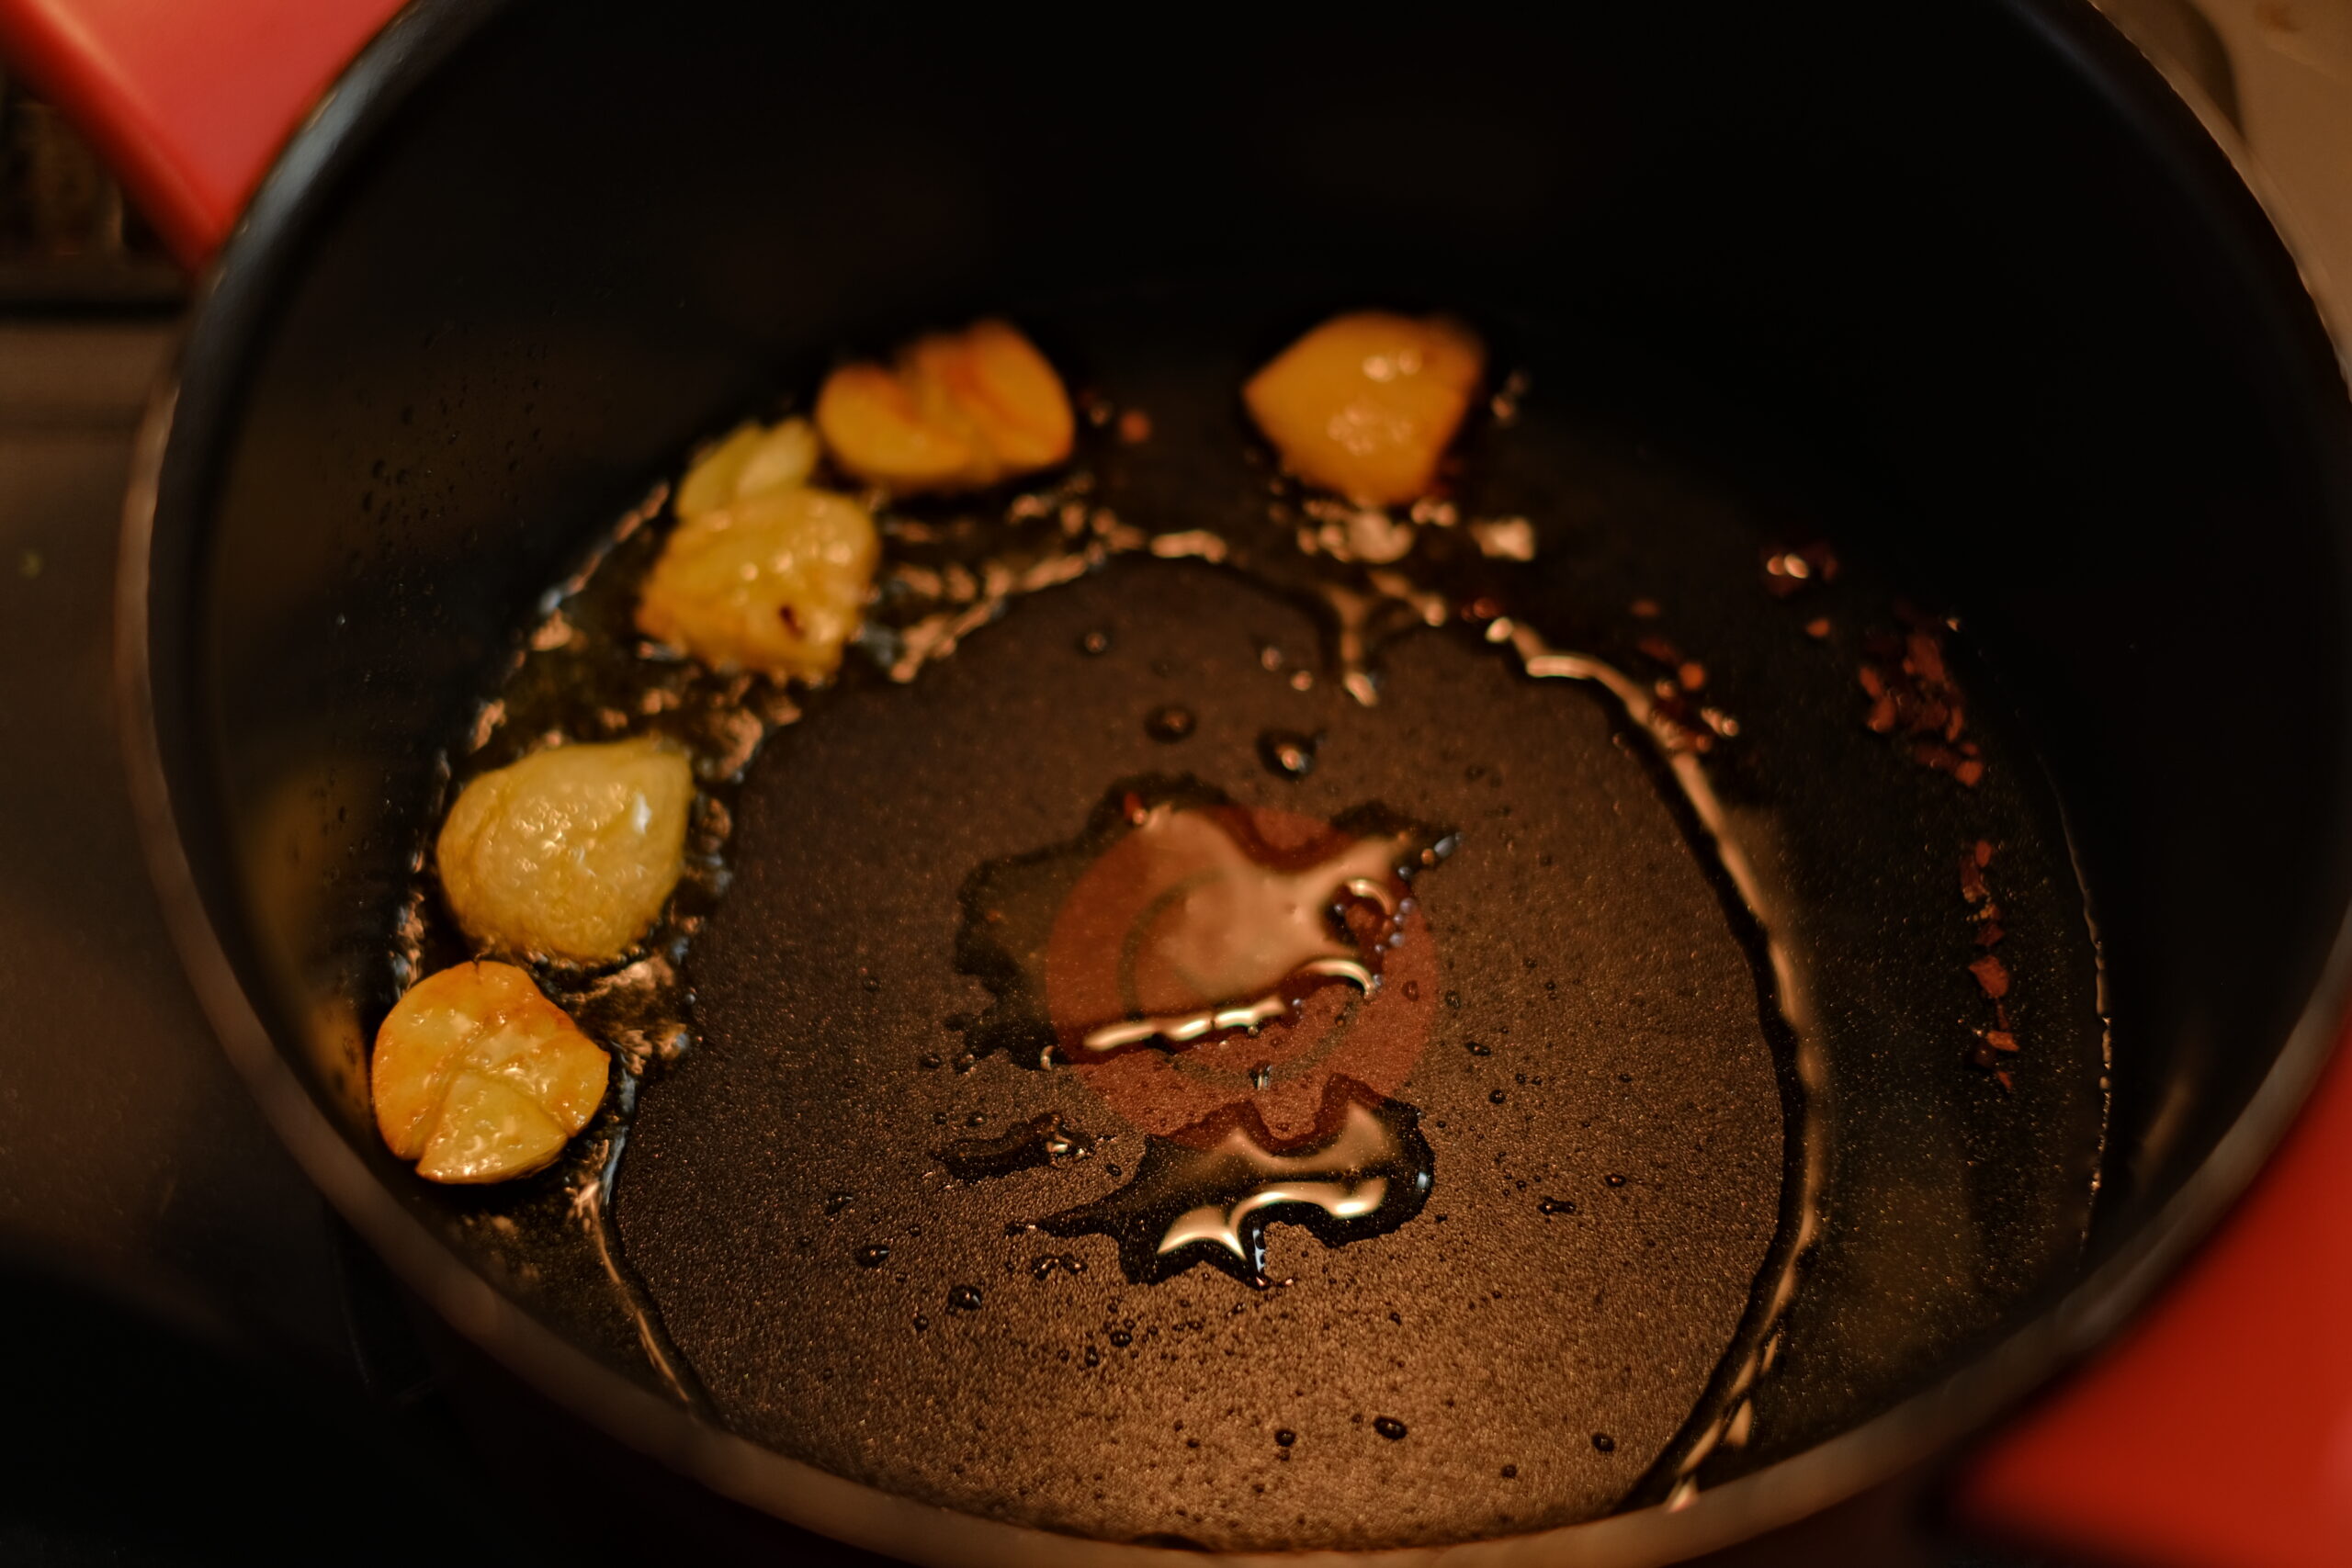 潰したニンニクをオリーブオイルとともに弱火で香ばしく炒めている様子の画像です